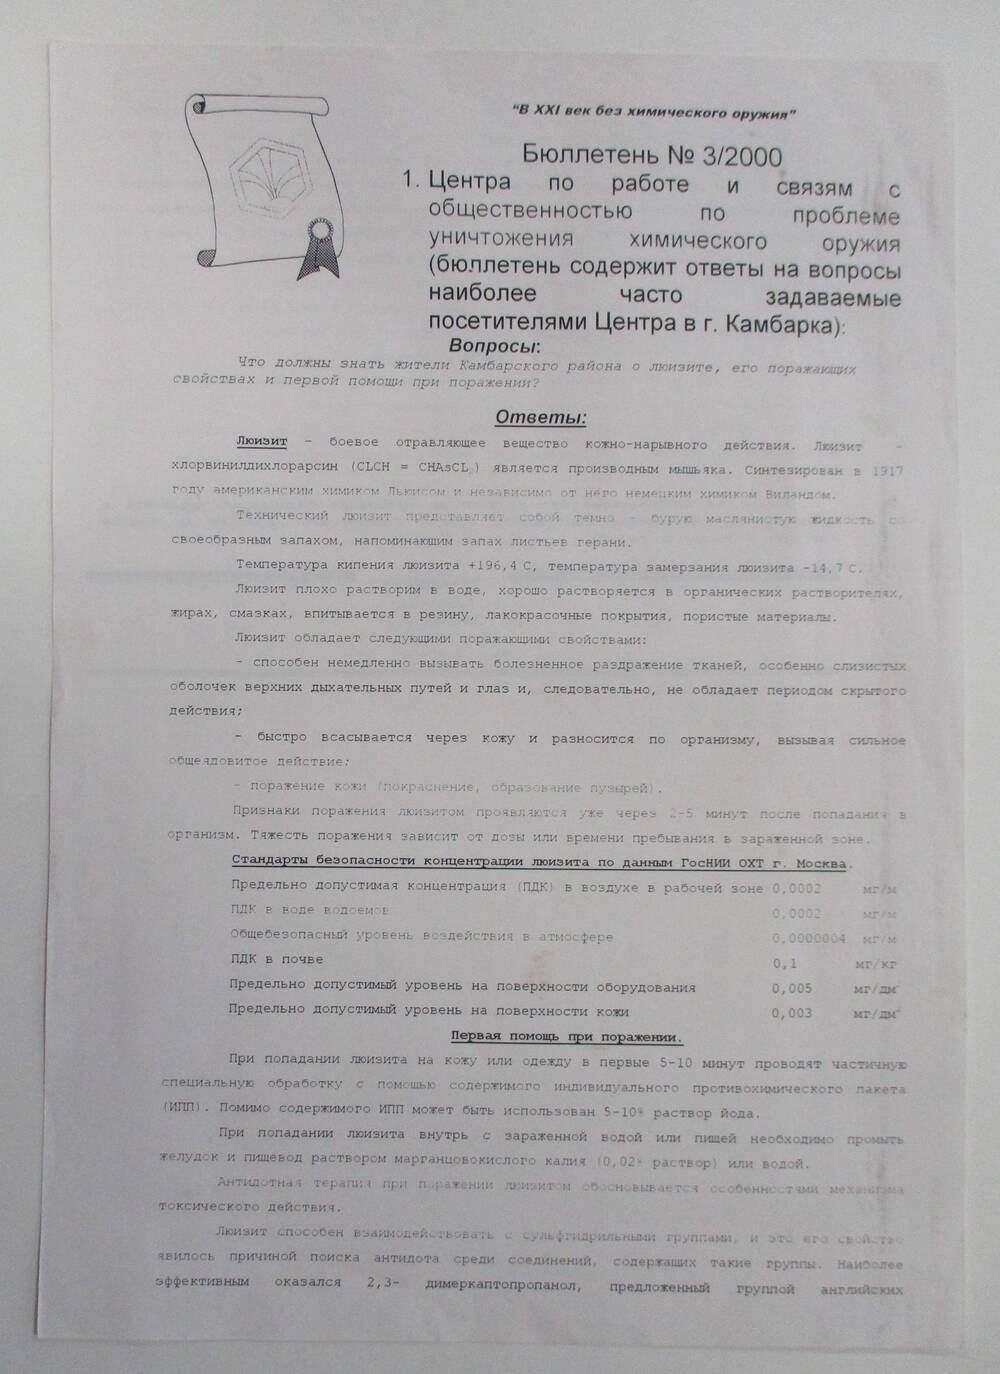 Бюллетень №3/2000 Центра по работе и связям с общественностью г.Камбарка по проблеме уничтожения химического оружия